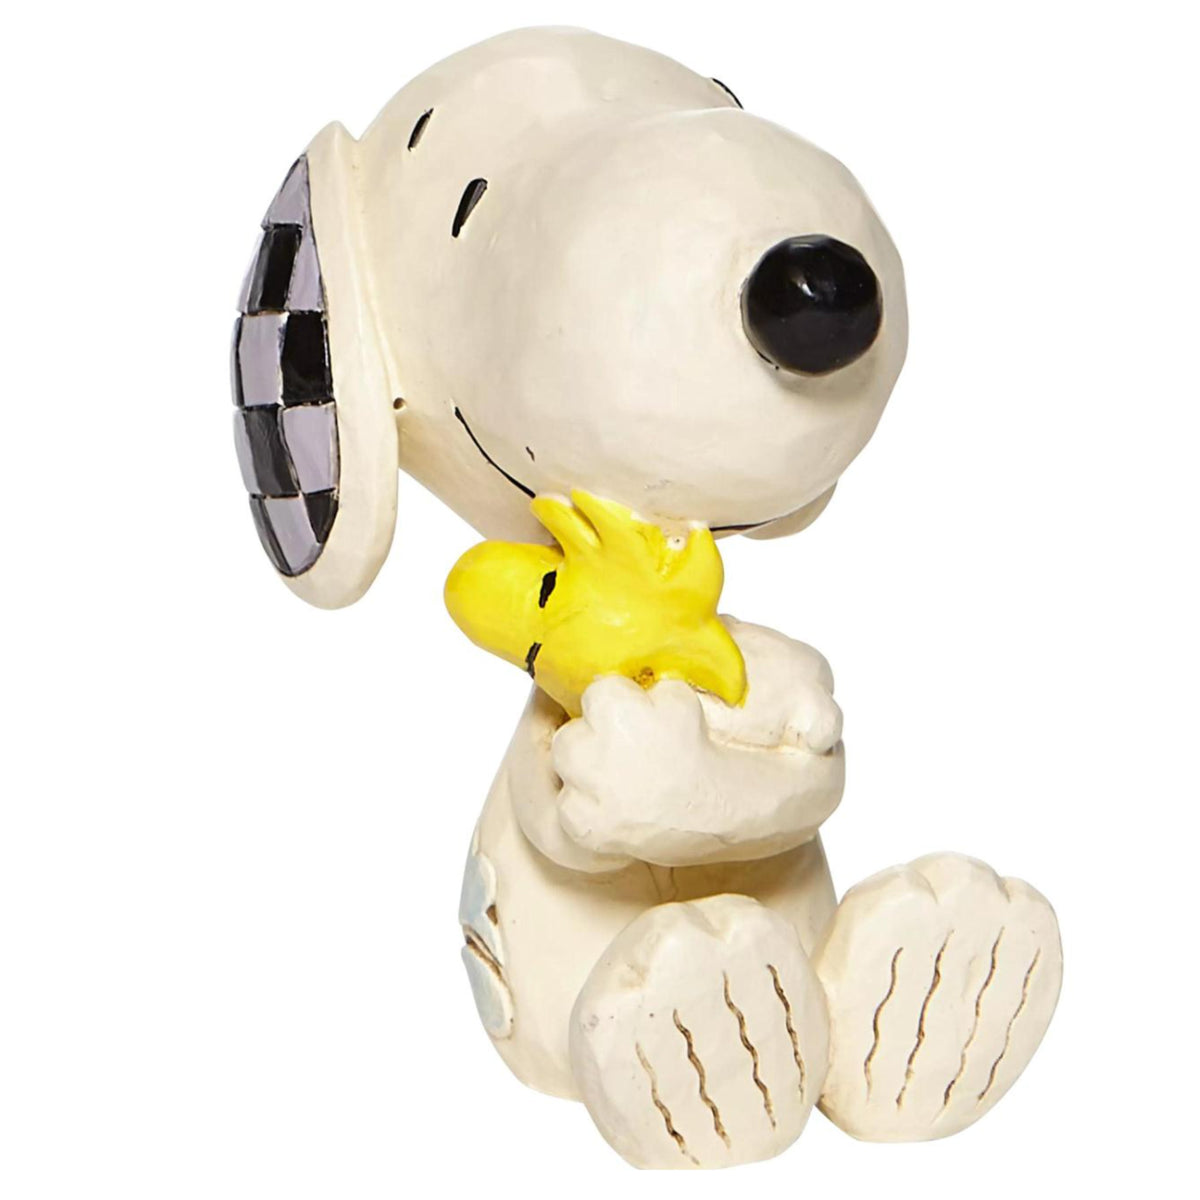 Peanuts - Snoopy and Woodstock Figurine